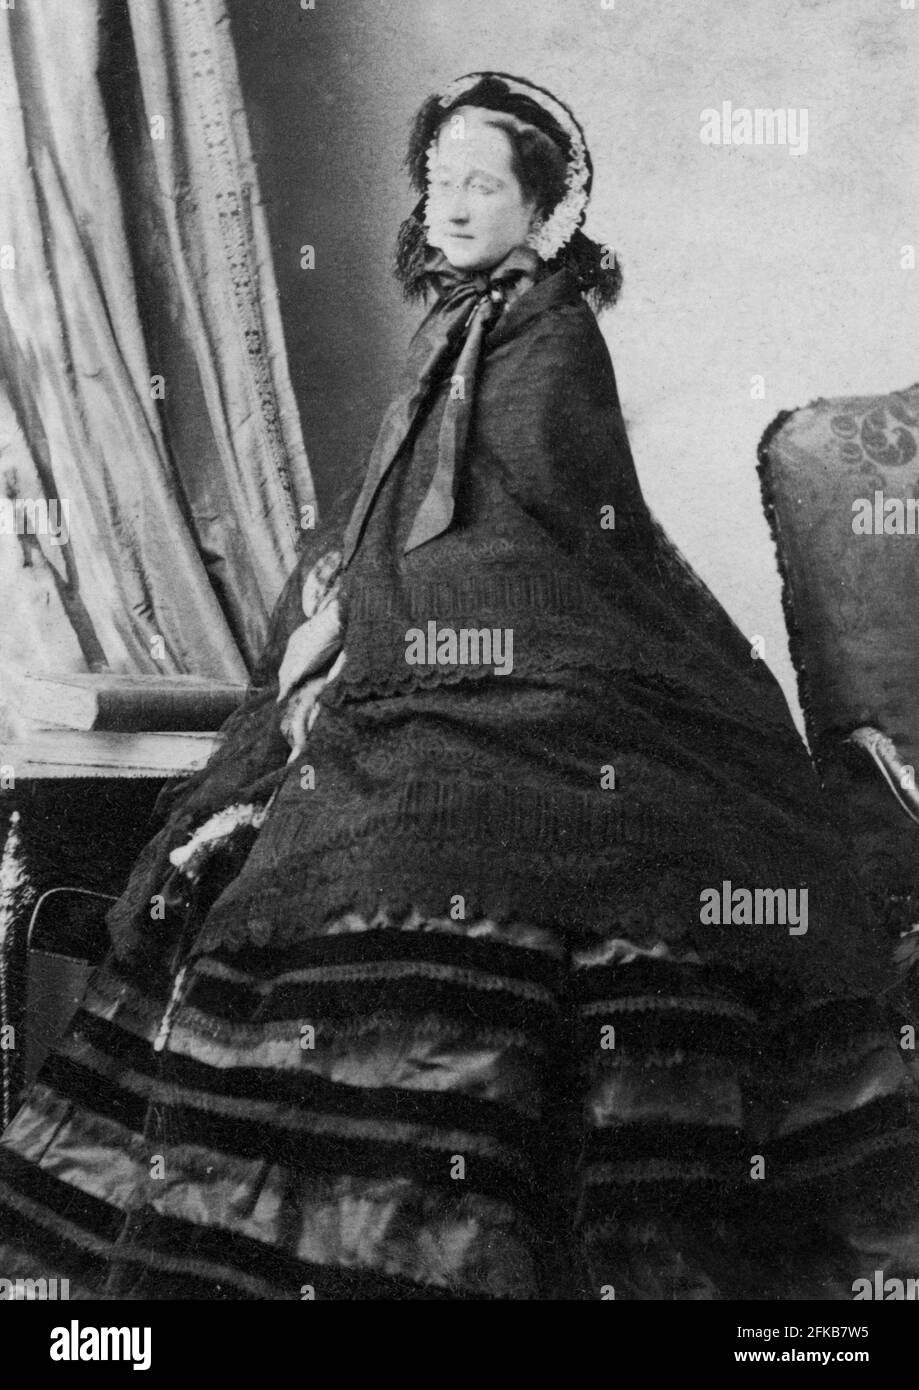 Eugenia María de Montijo de Guzmán, Contessa de Teba (imperatrice Eugénie) (1826-1920) imperatrice dal 1826 al 1870 Parigi, Fondazione Napoléon Foto Stock